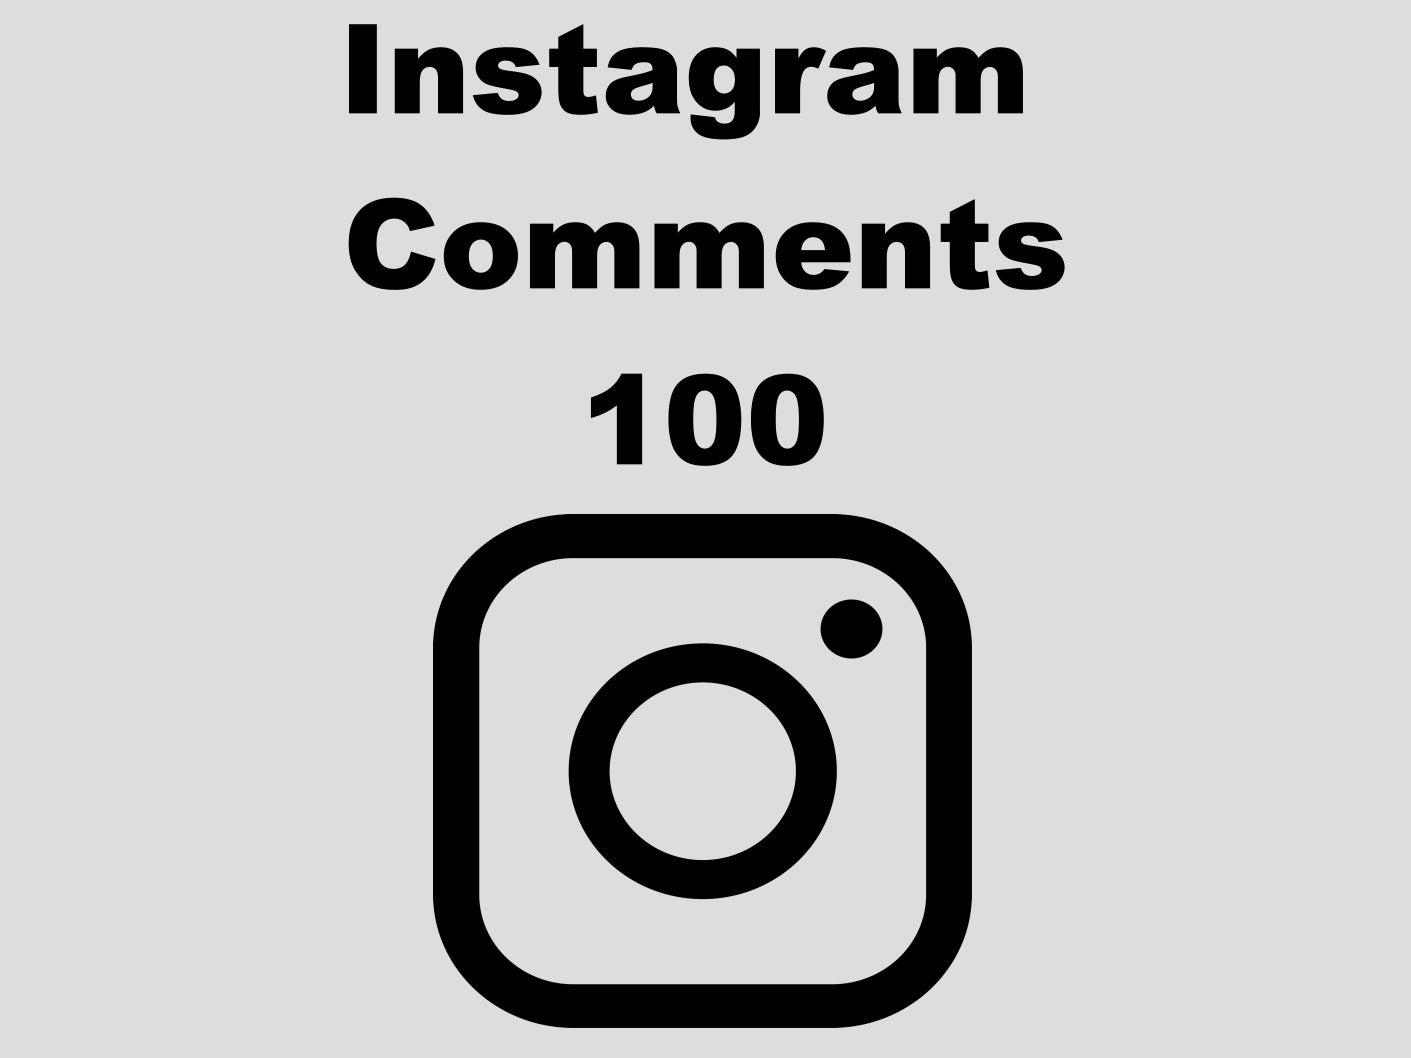 echte Instagram Comments günstig kaufen 100 Kommentare